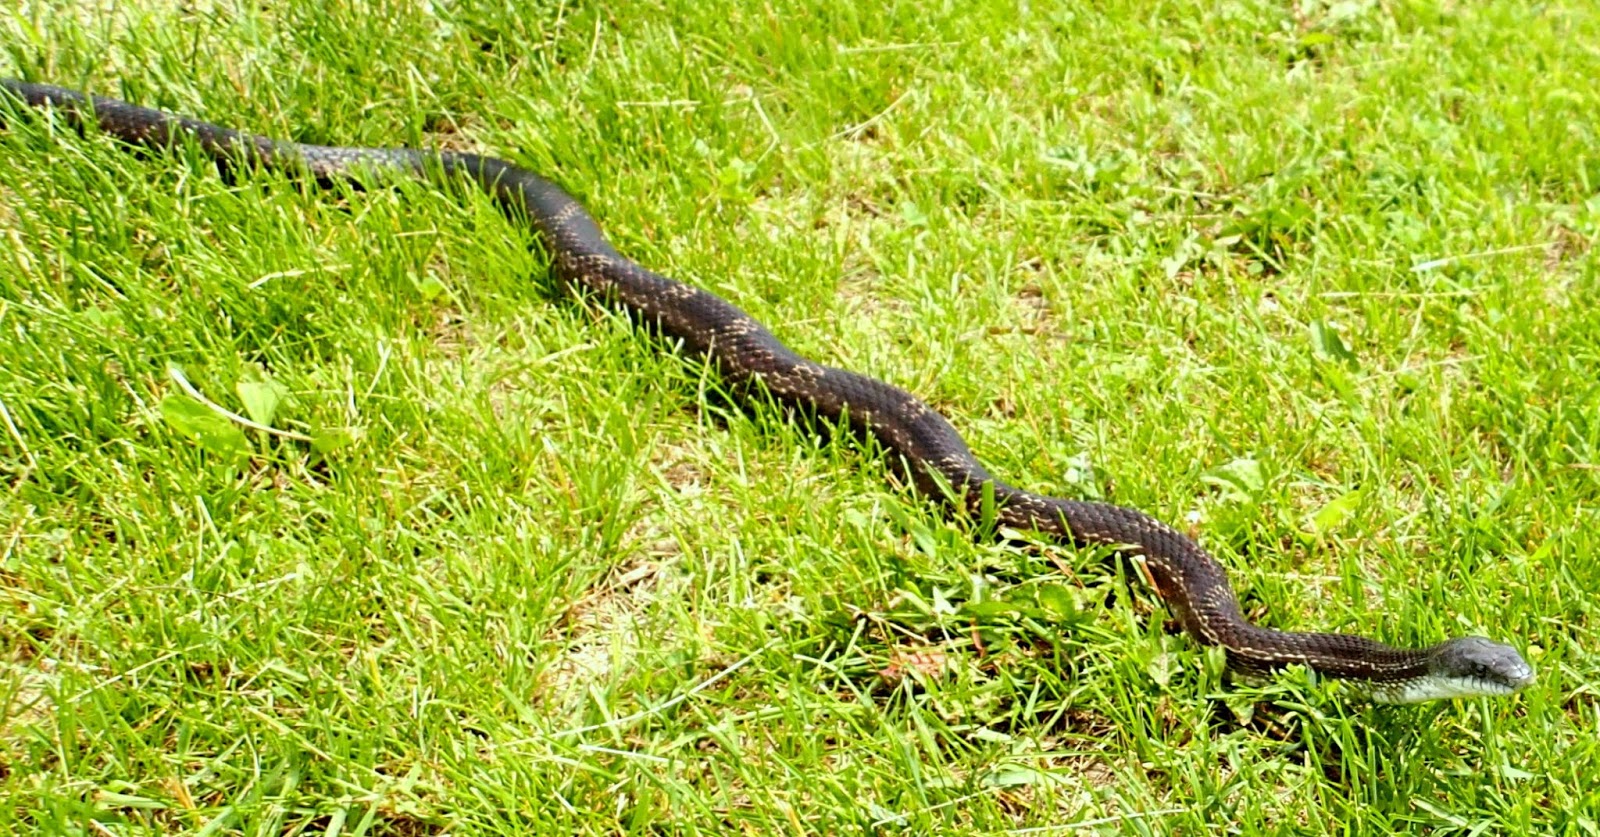 Snakes are longer. Long Snake. Snakes long longer. Black Snake Crawling in length. Long Snake short Snake.